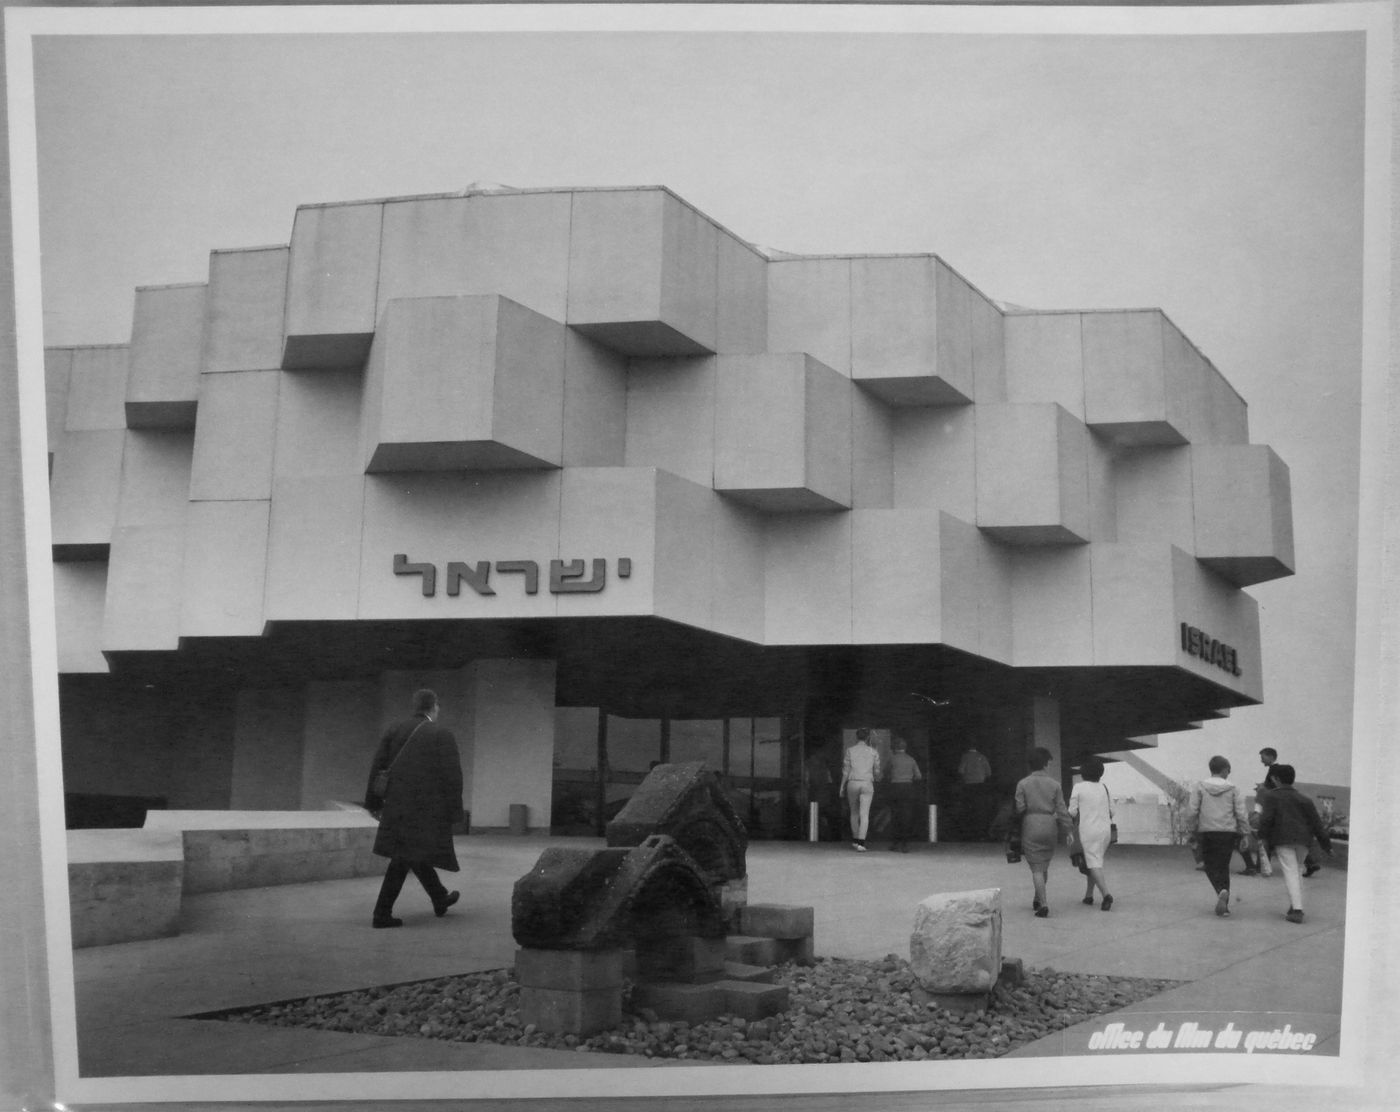 View of the Israel Pavilion, Expo 67, Montréal, Québec